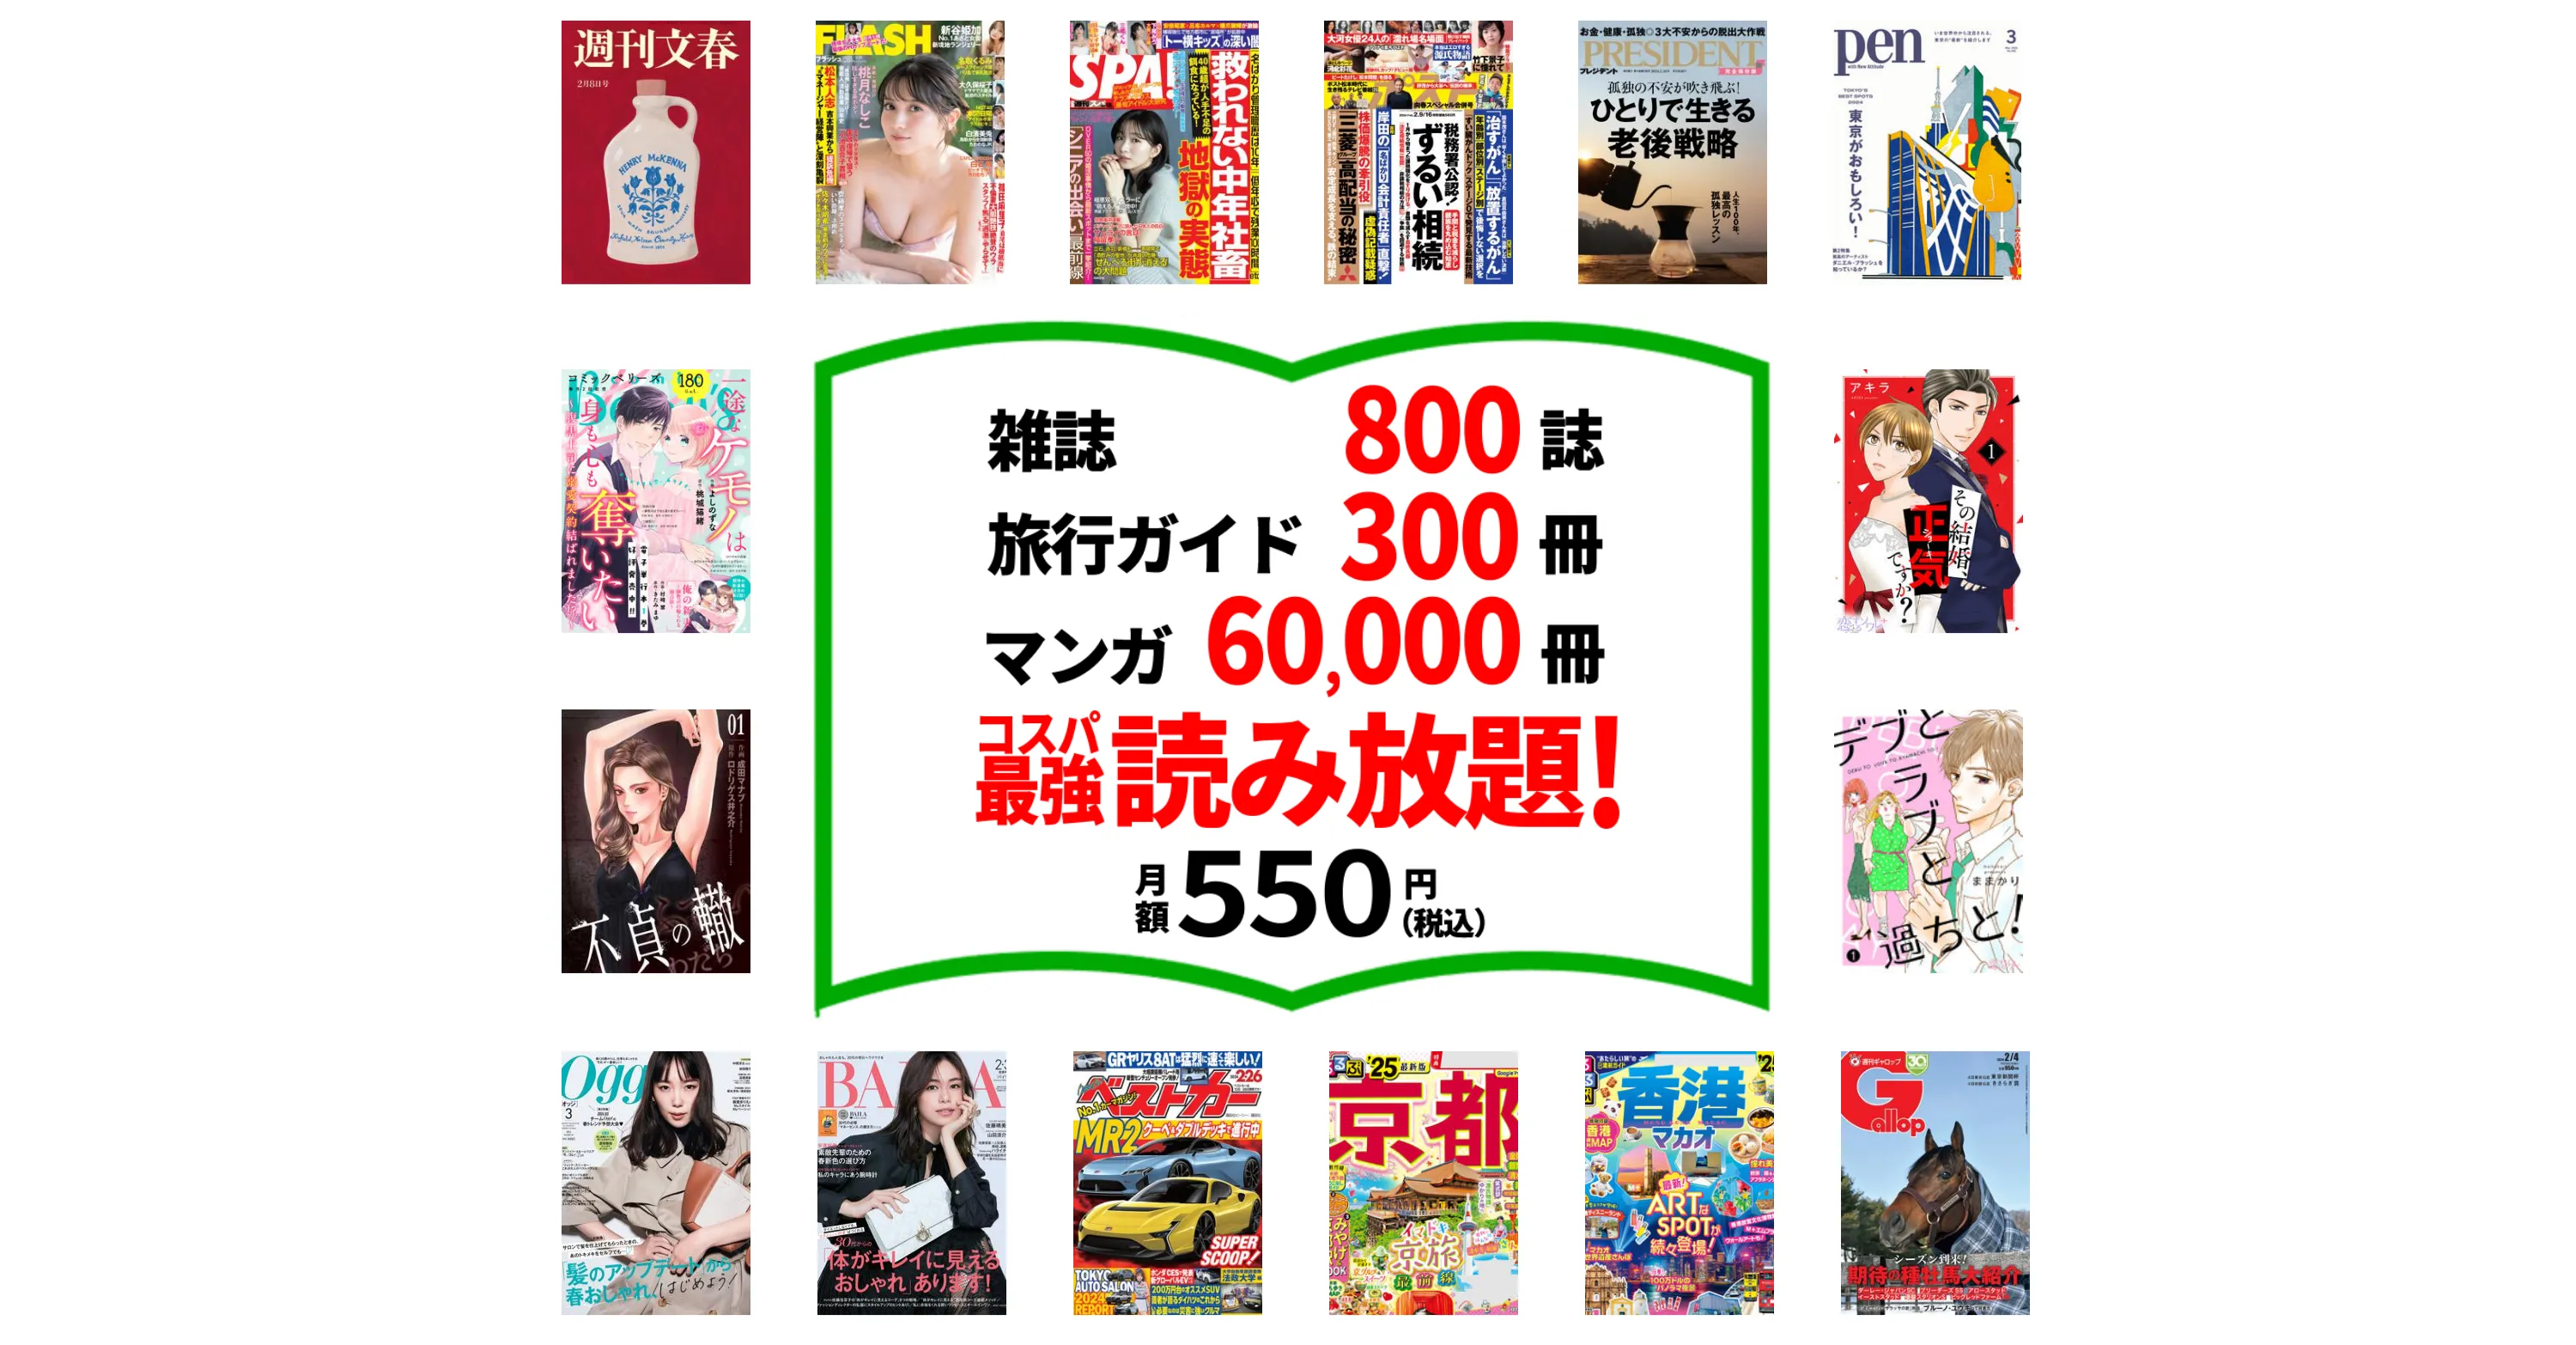 たった550円で雑誌800誌 旅行ガイド300冊以上読み放題。最初の1ヵ月無料。